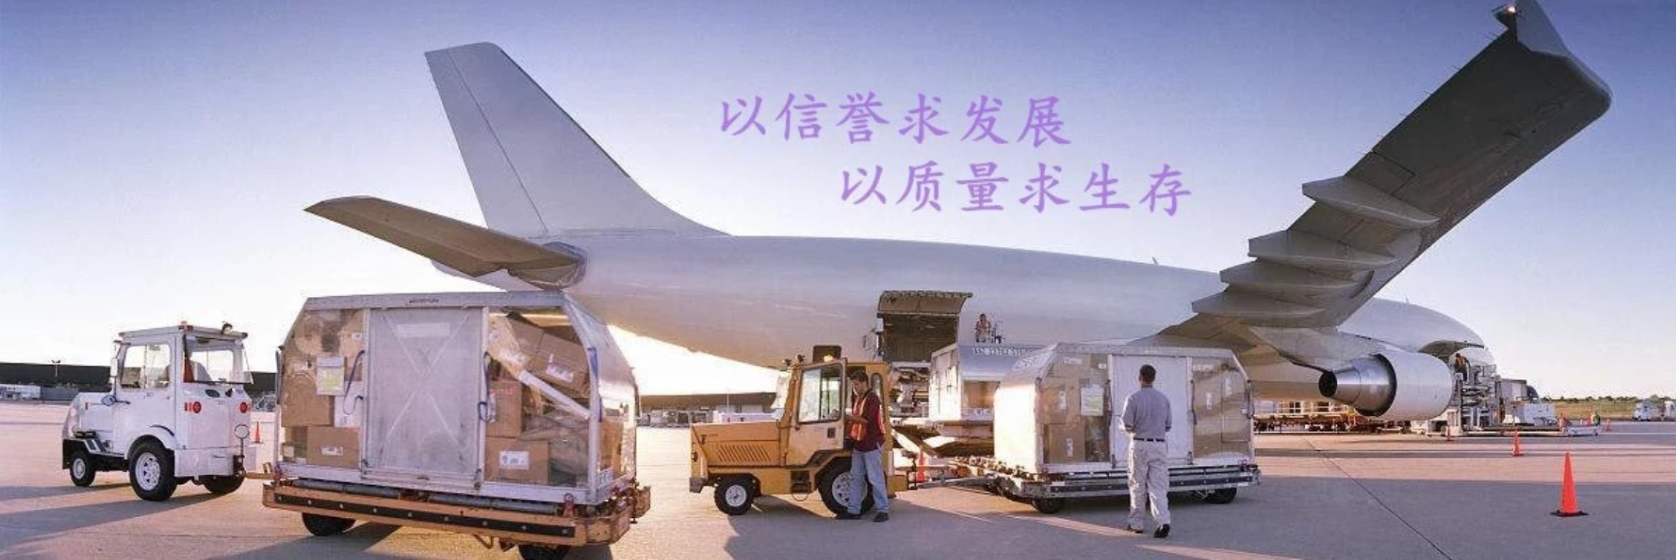 上海到日本下关海运拼箱物流出口流程代理办理dduddp